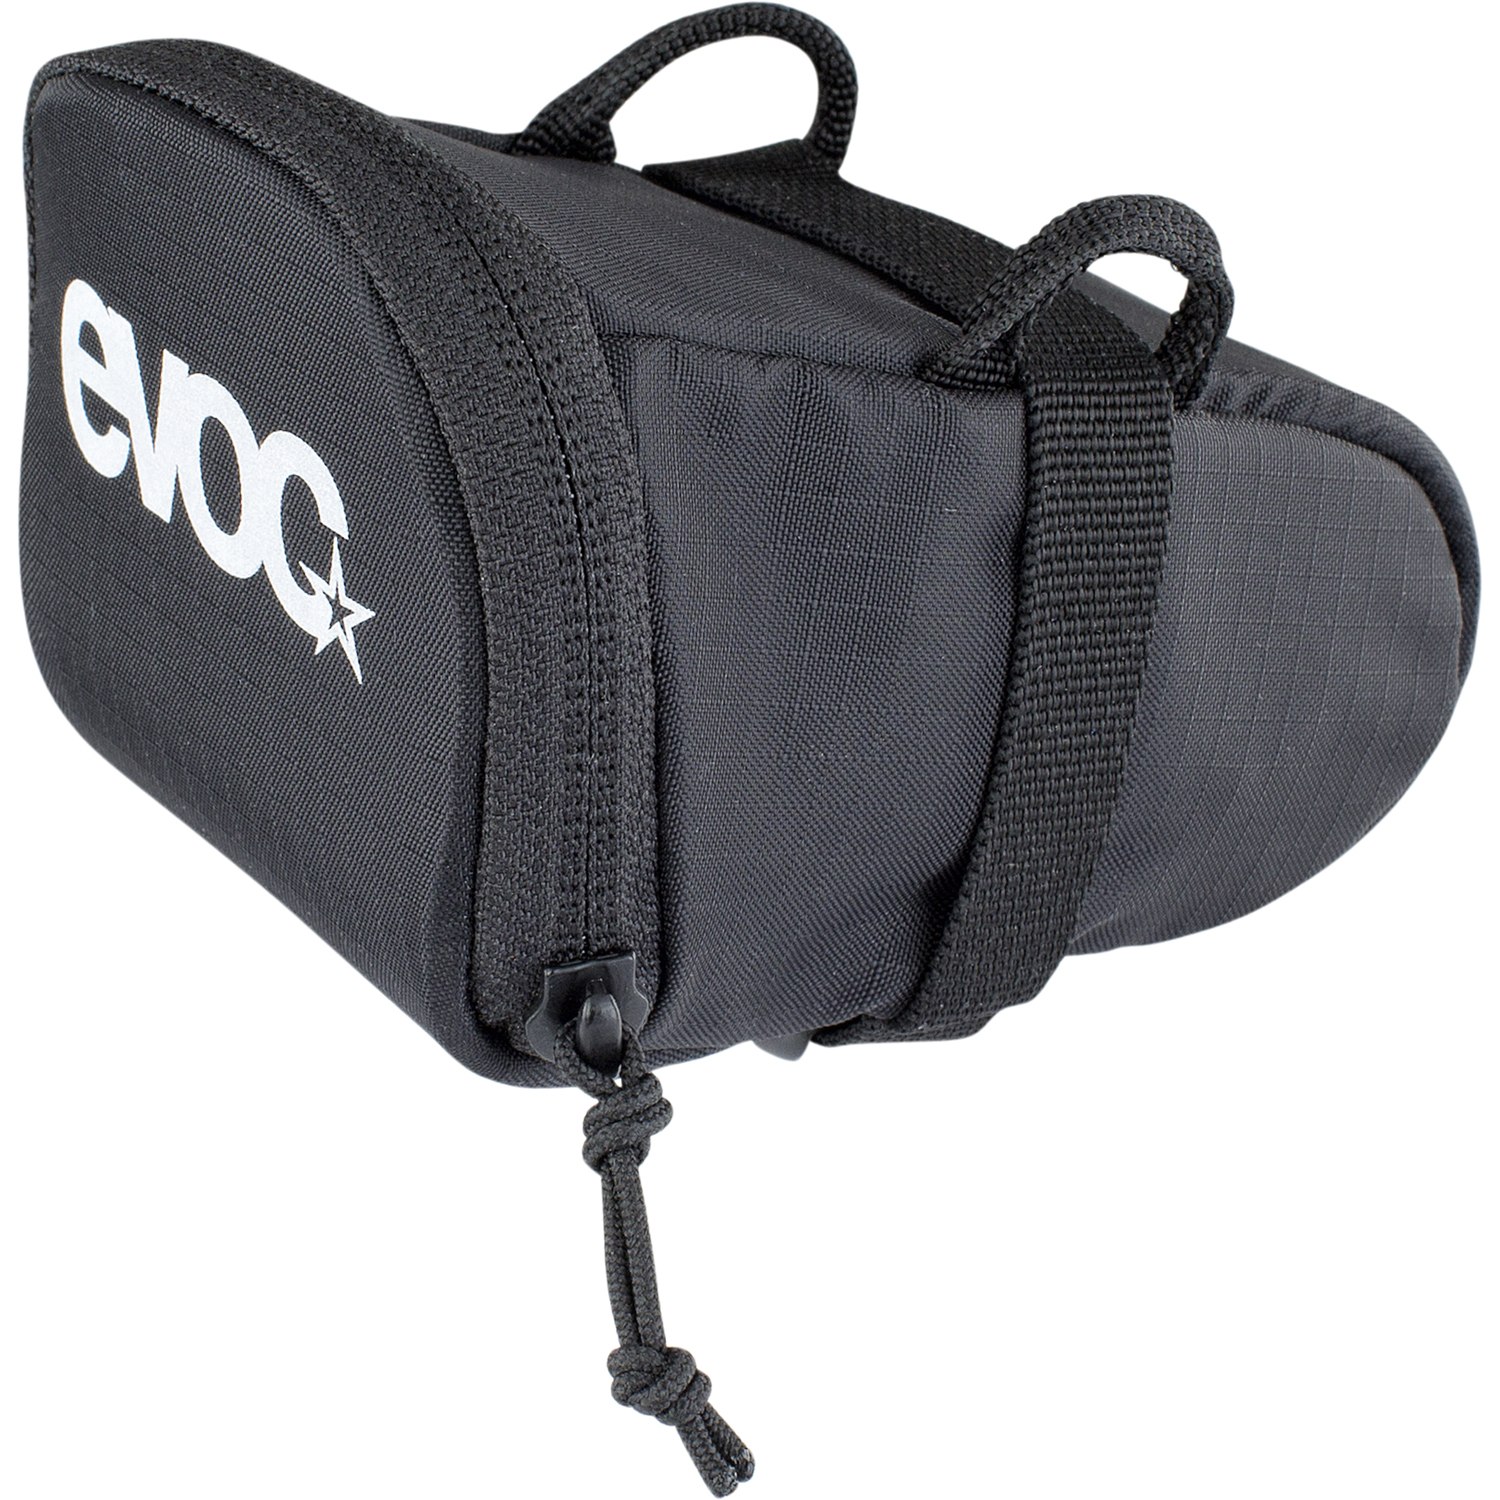 Produktbild von EVOC SEAT BAG - 0,3L Satteltasche - Black